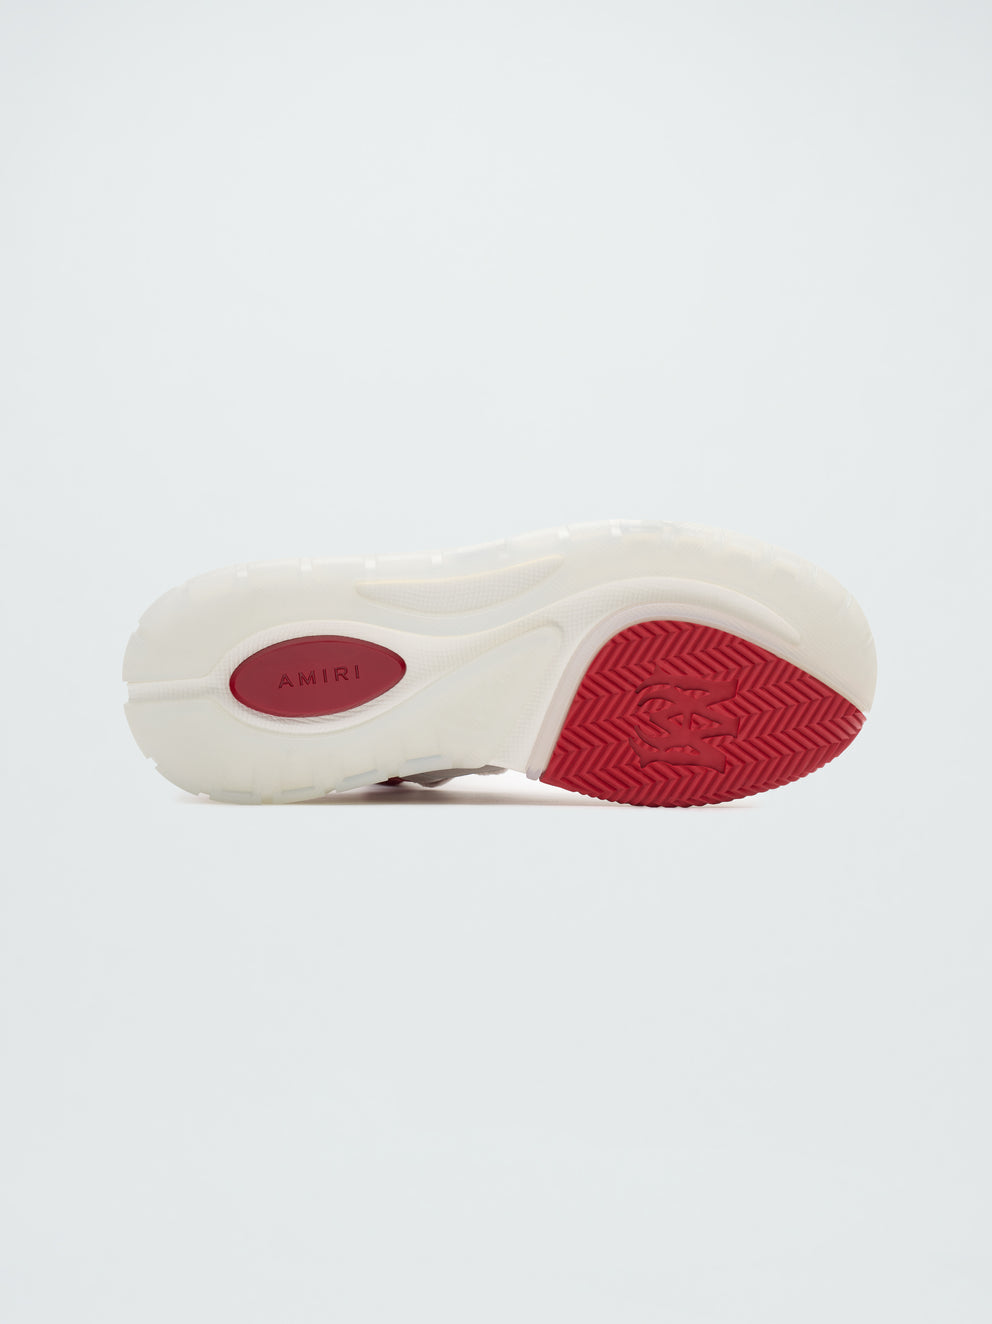 Zapatillas Amiri Ma-1 Hombre Blancas Rojas | 4029RNUQY